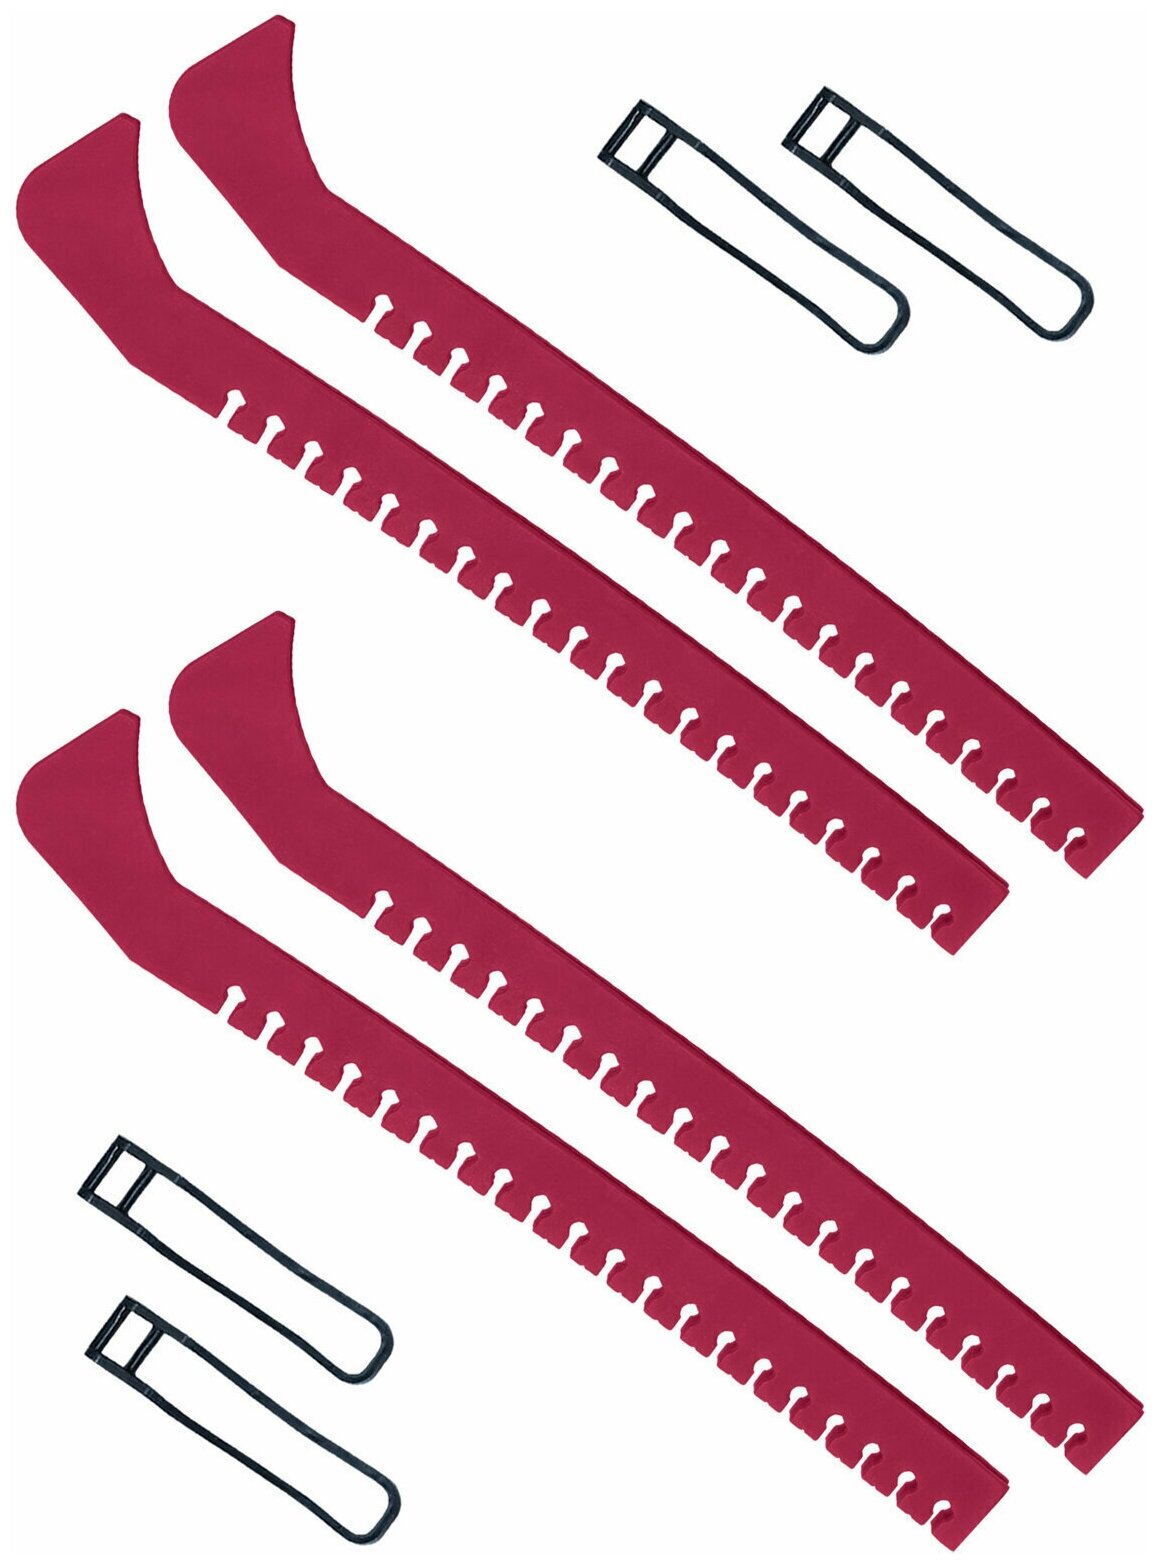 Набор зимний: Чехлы для коньков на лезвие универсальные красные набор 2 шт.